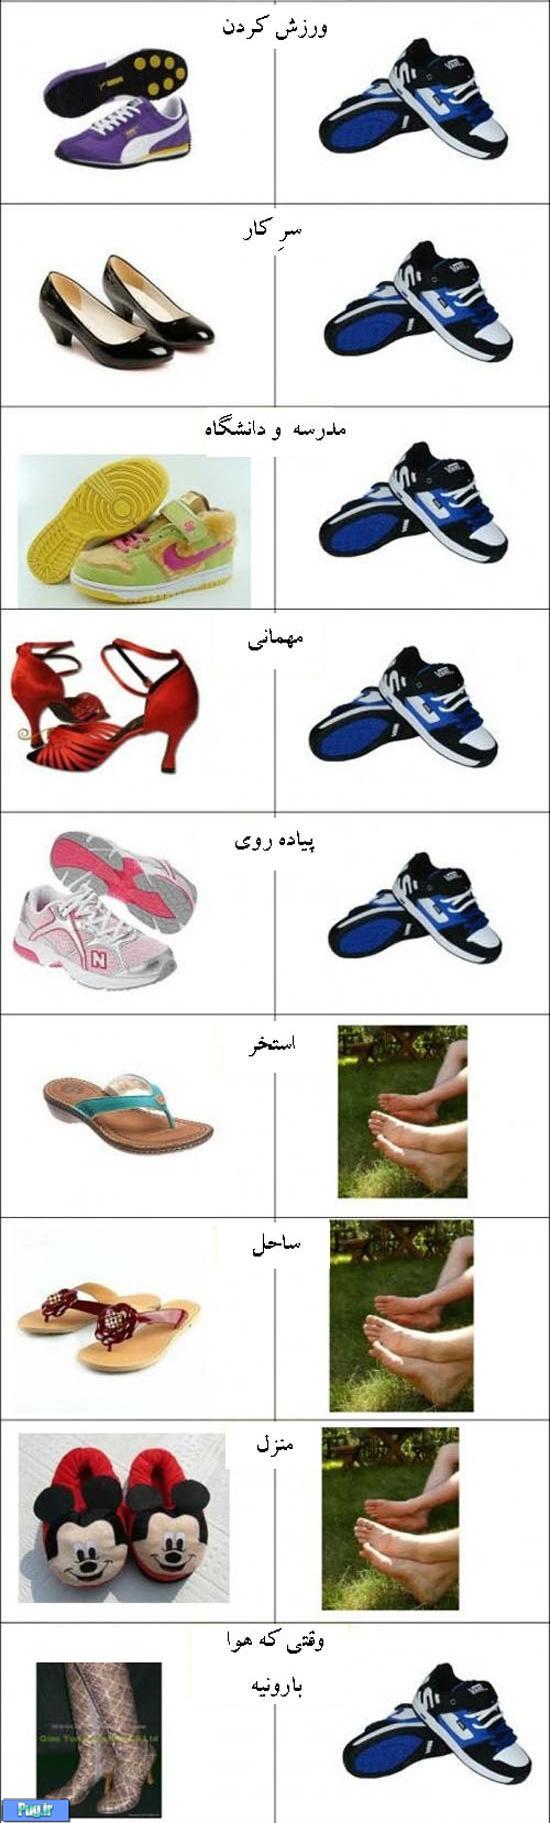 تفاوت کفش دخترها و پسرها